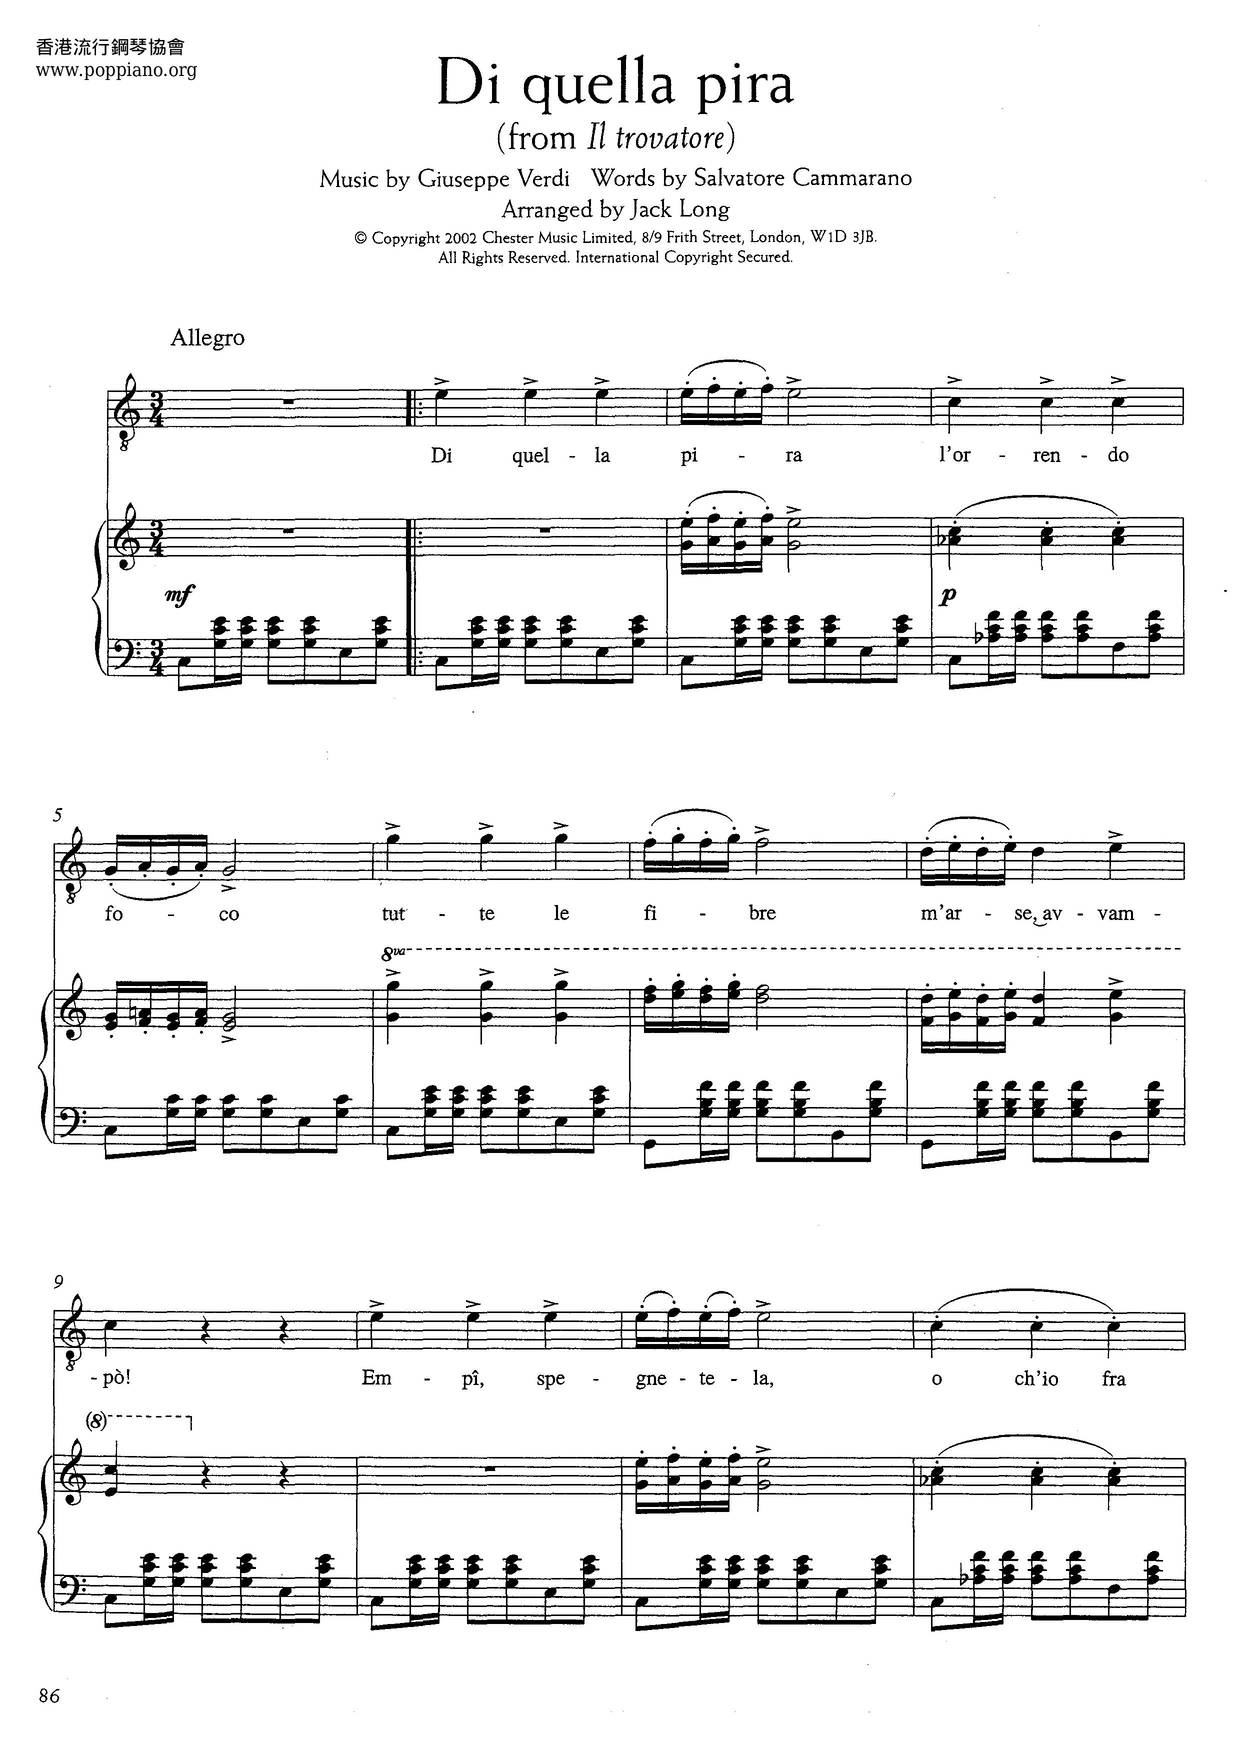 Di Quella Pira From II Trovatore (Verdi) Score